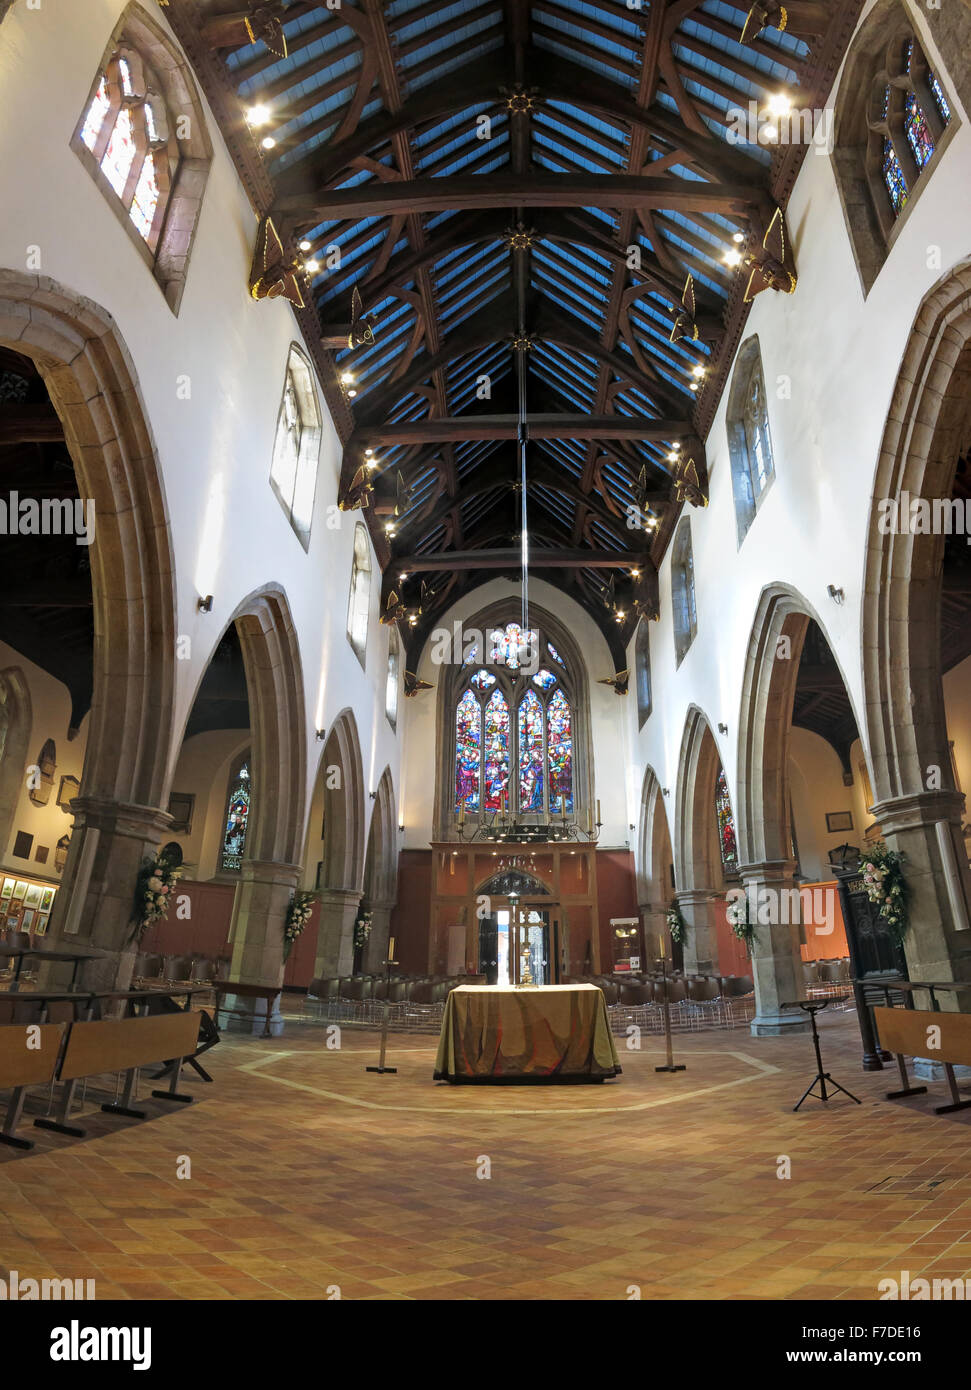 El interior de la Iglesia de todos los santos, Kingston Upon Thames, Londres, Inglaterra, Reino Unido Foto de stock